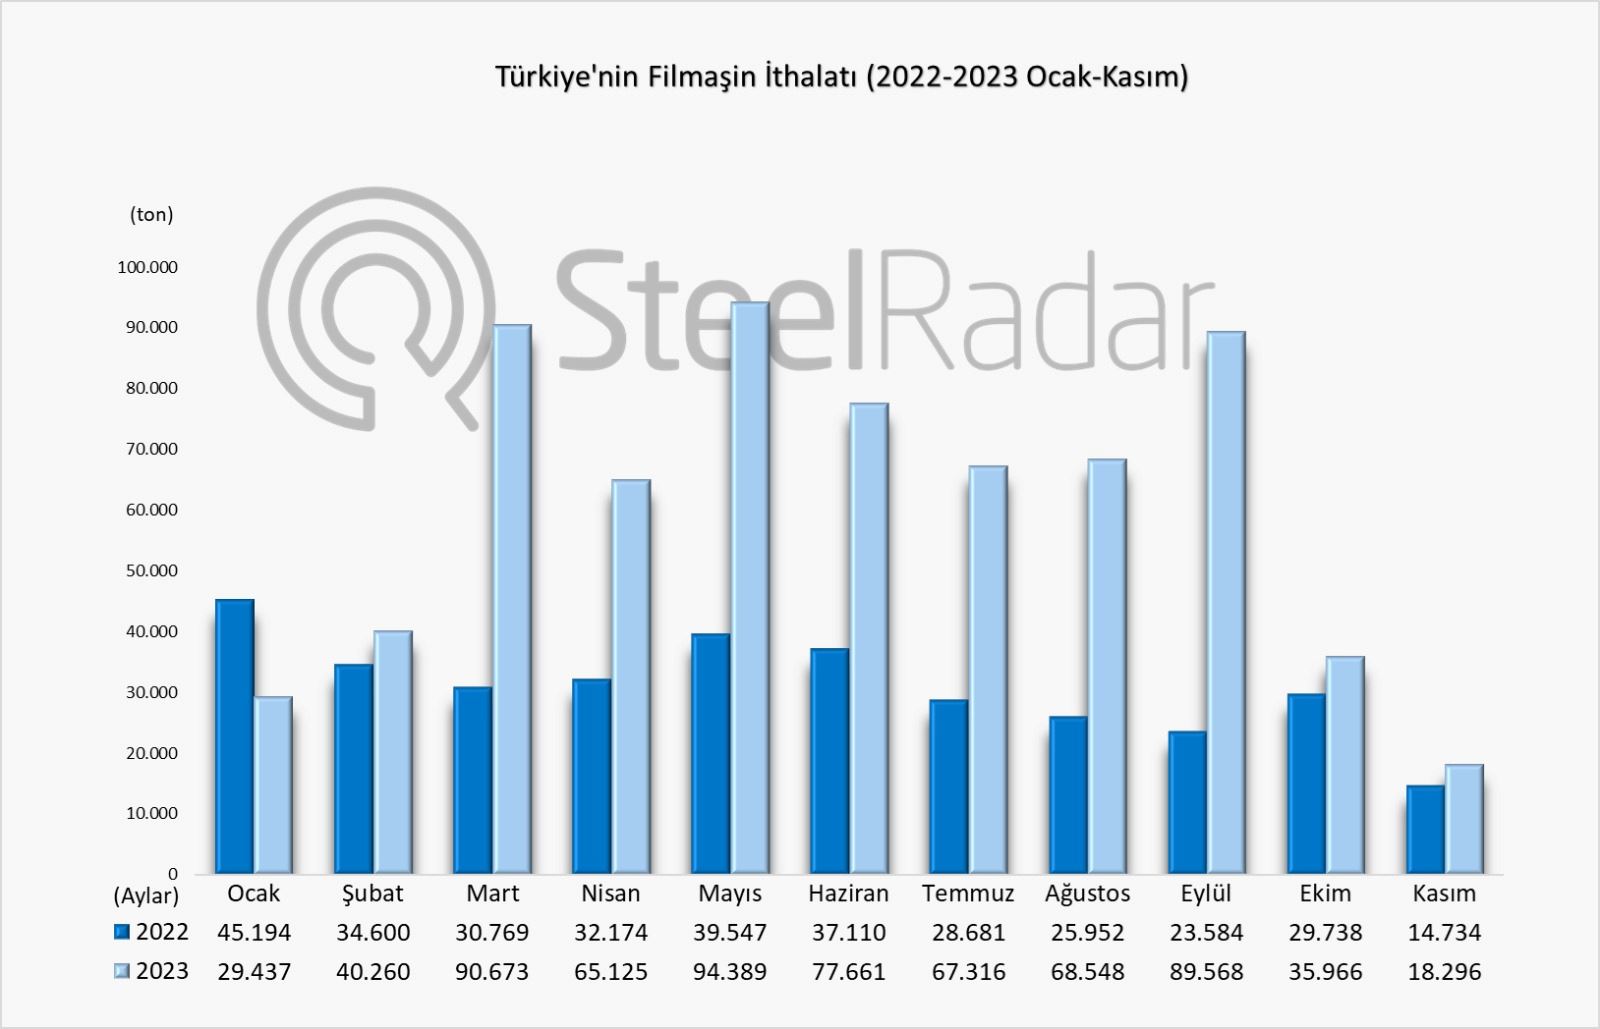 Türkiye’nin filmaşin ithalatında kasım ayı! Yıllık artışa rağmen en düşük ithalat